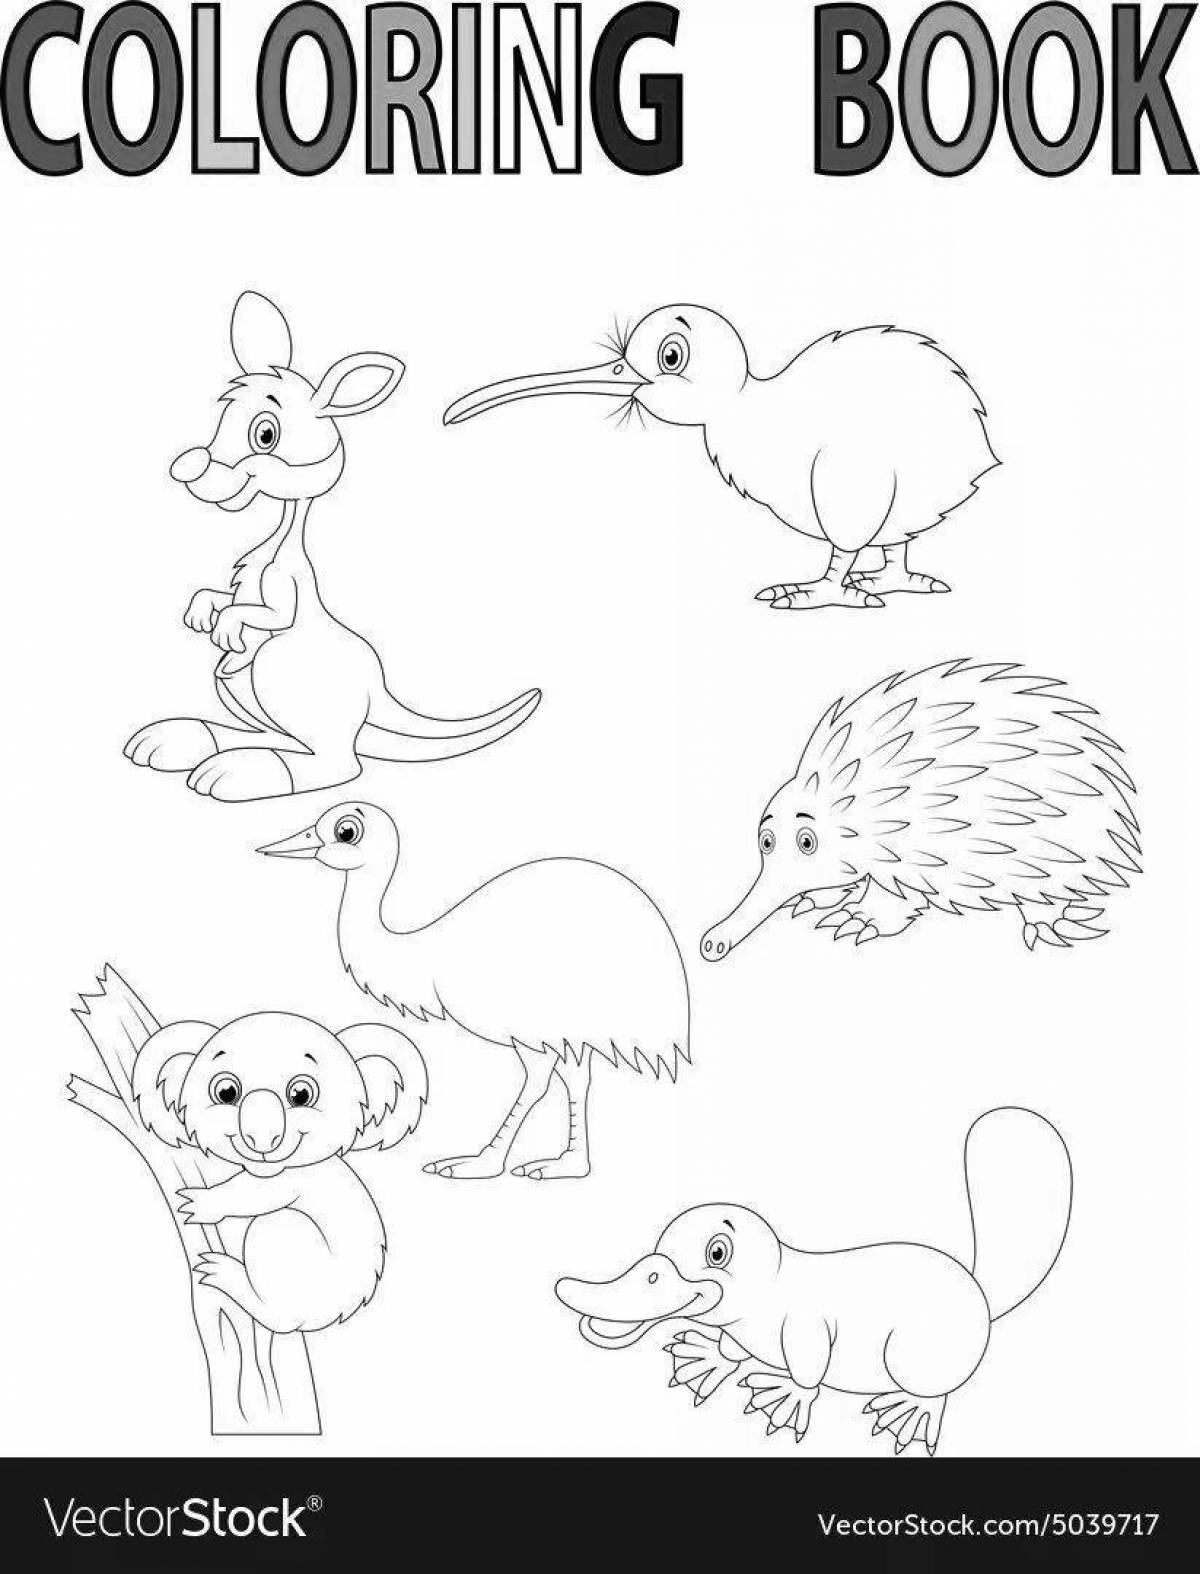 Fun Australian animal coloring book for preschoolers